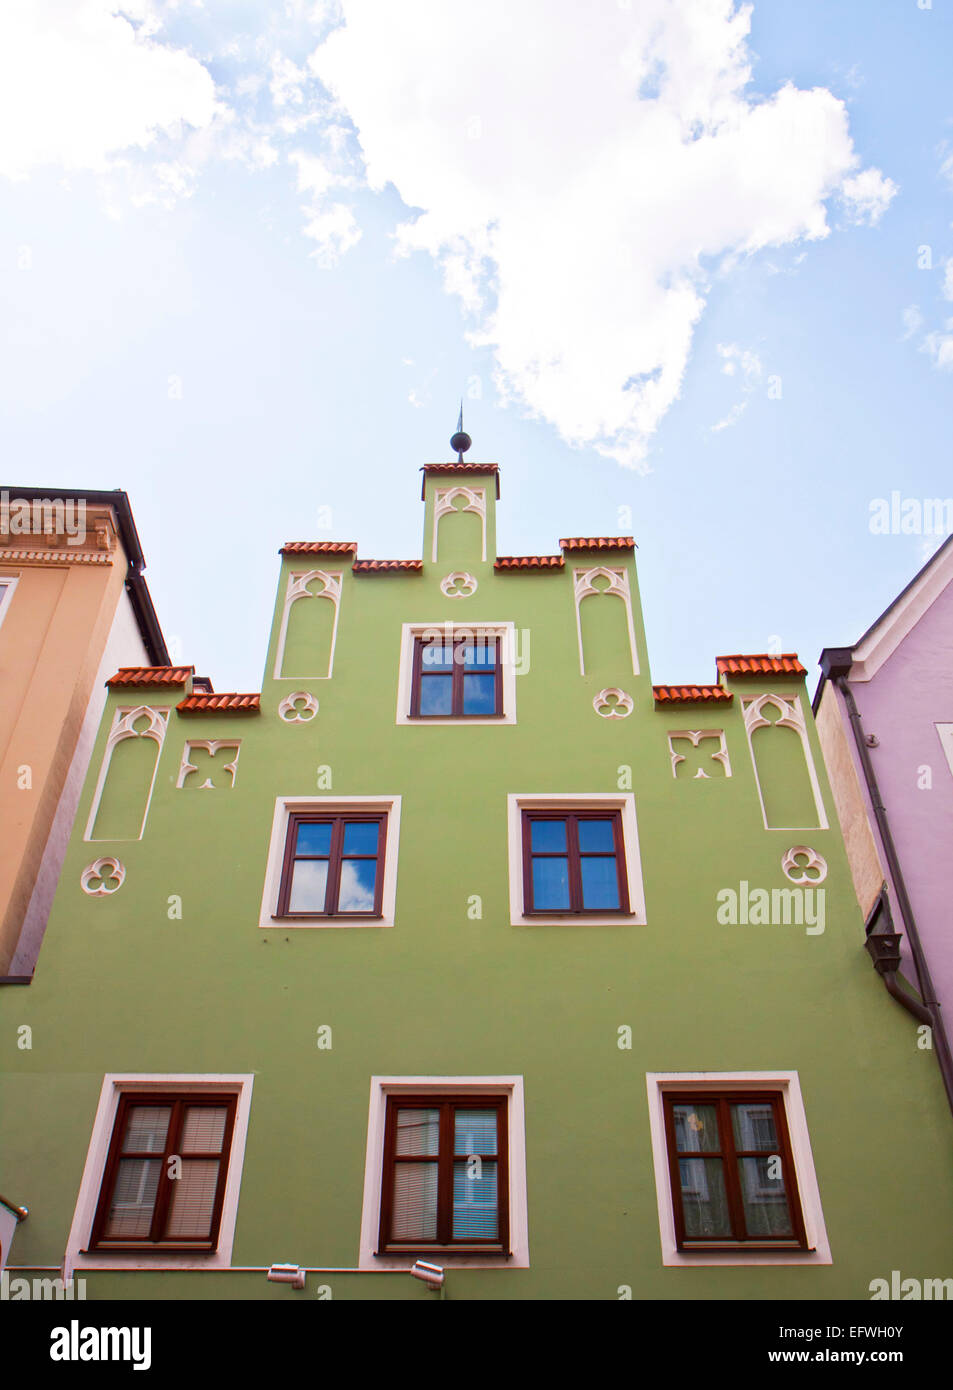 Casa tipica in Landshut in architettura rinascimentale di stile e colori pastello. Foto Stock